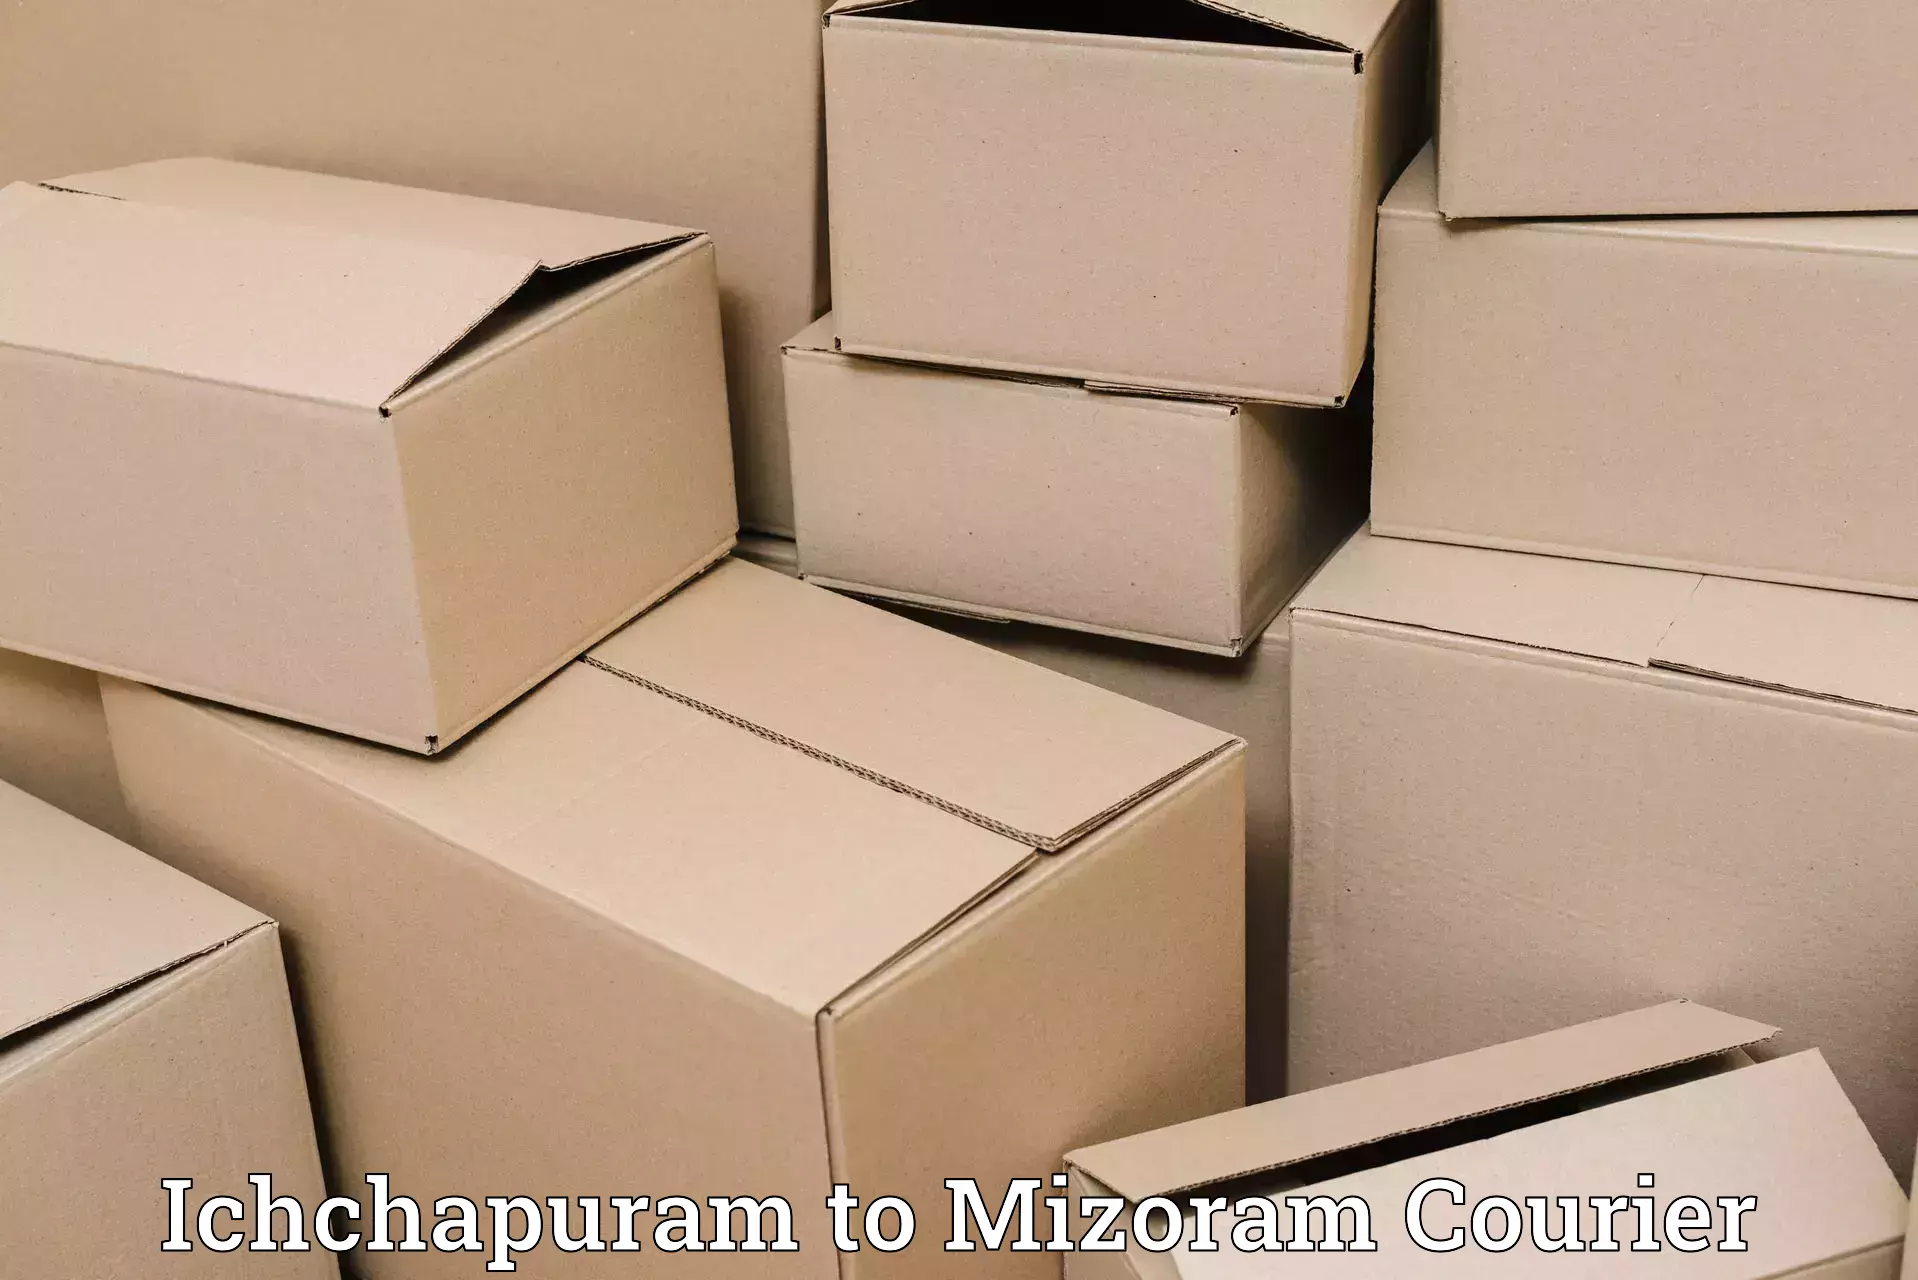 Cost-effective courier options Ichchapuram to Darlawn